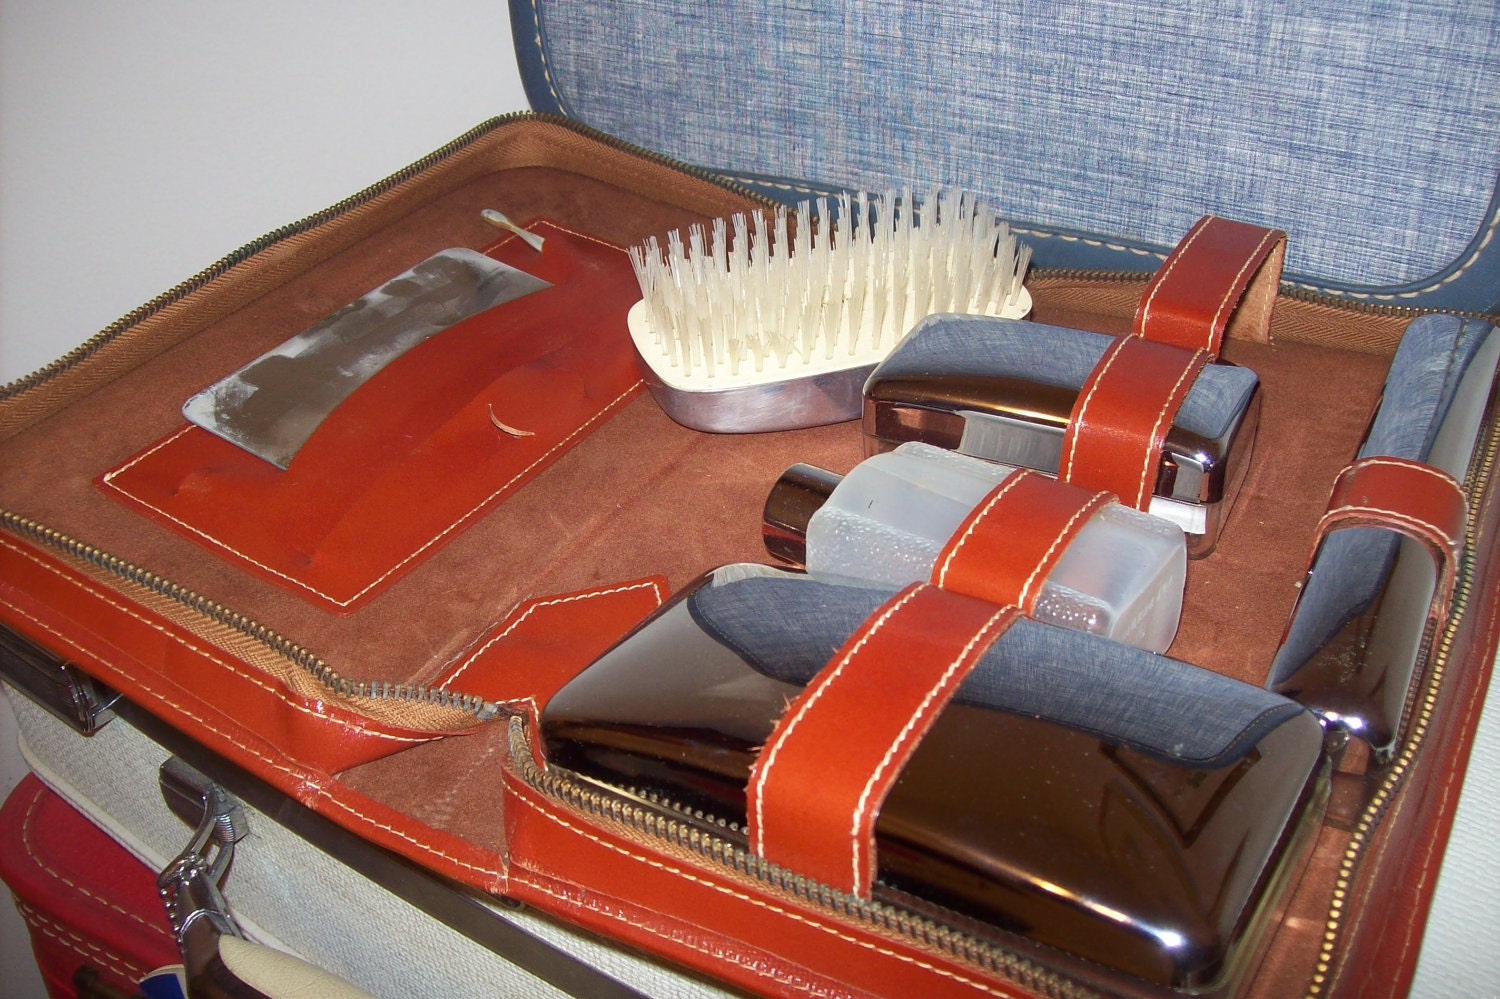 Men's Vintage Travel Kit In Leather Case